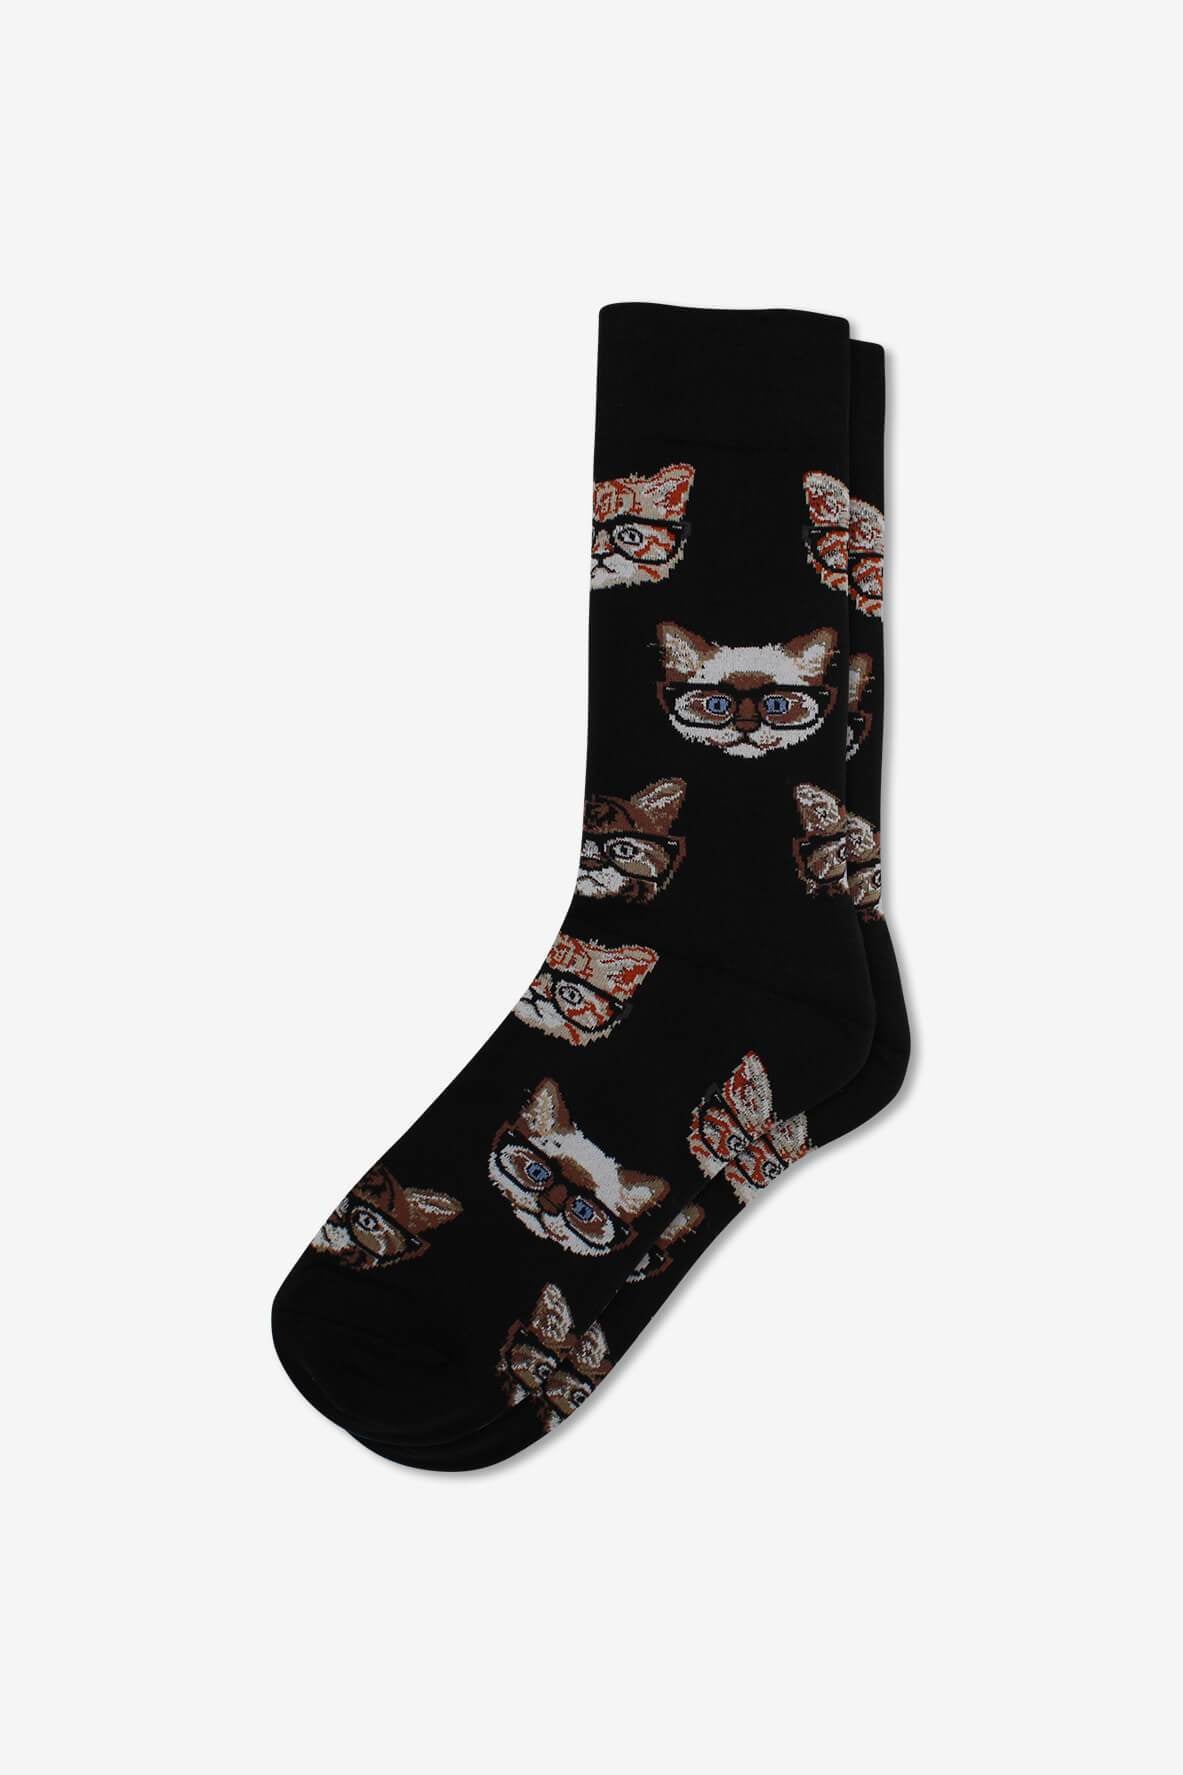 Socks IMG_5284, socks, GoTie